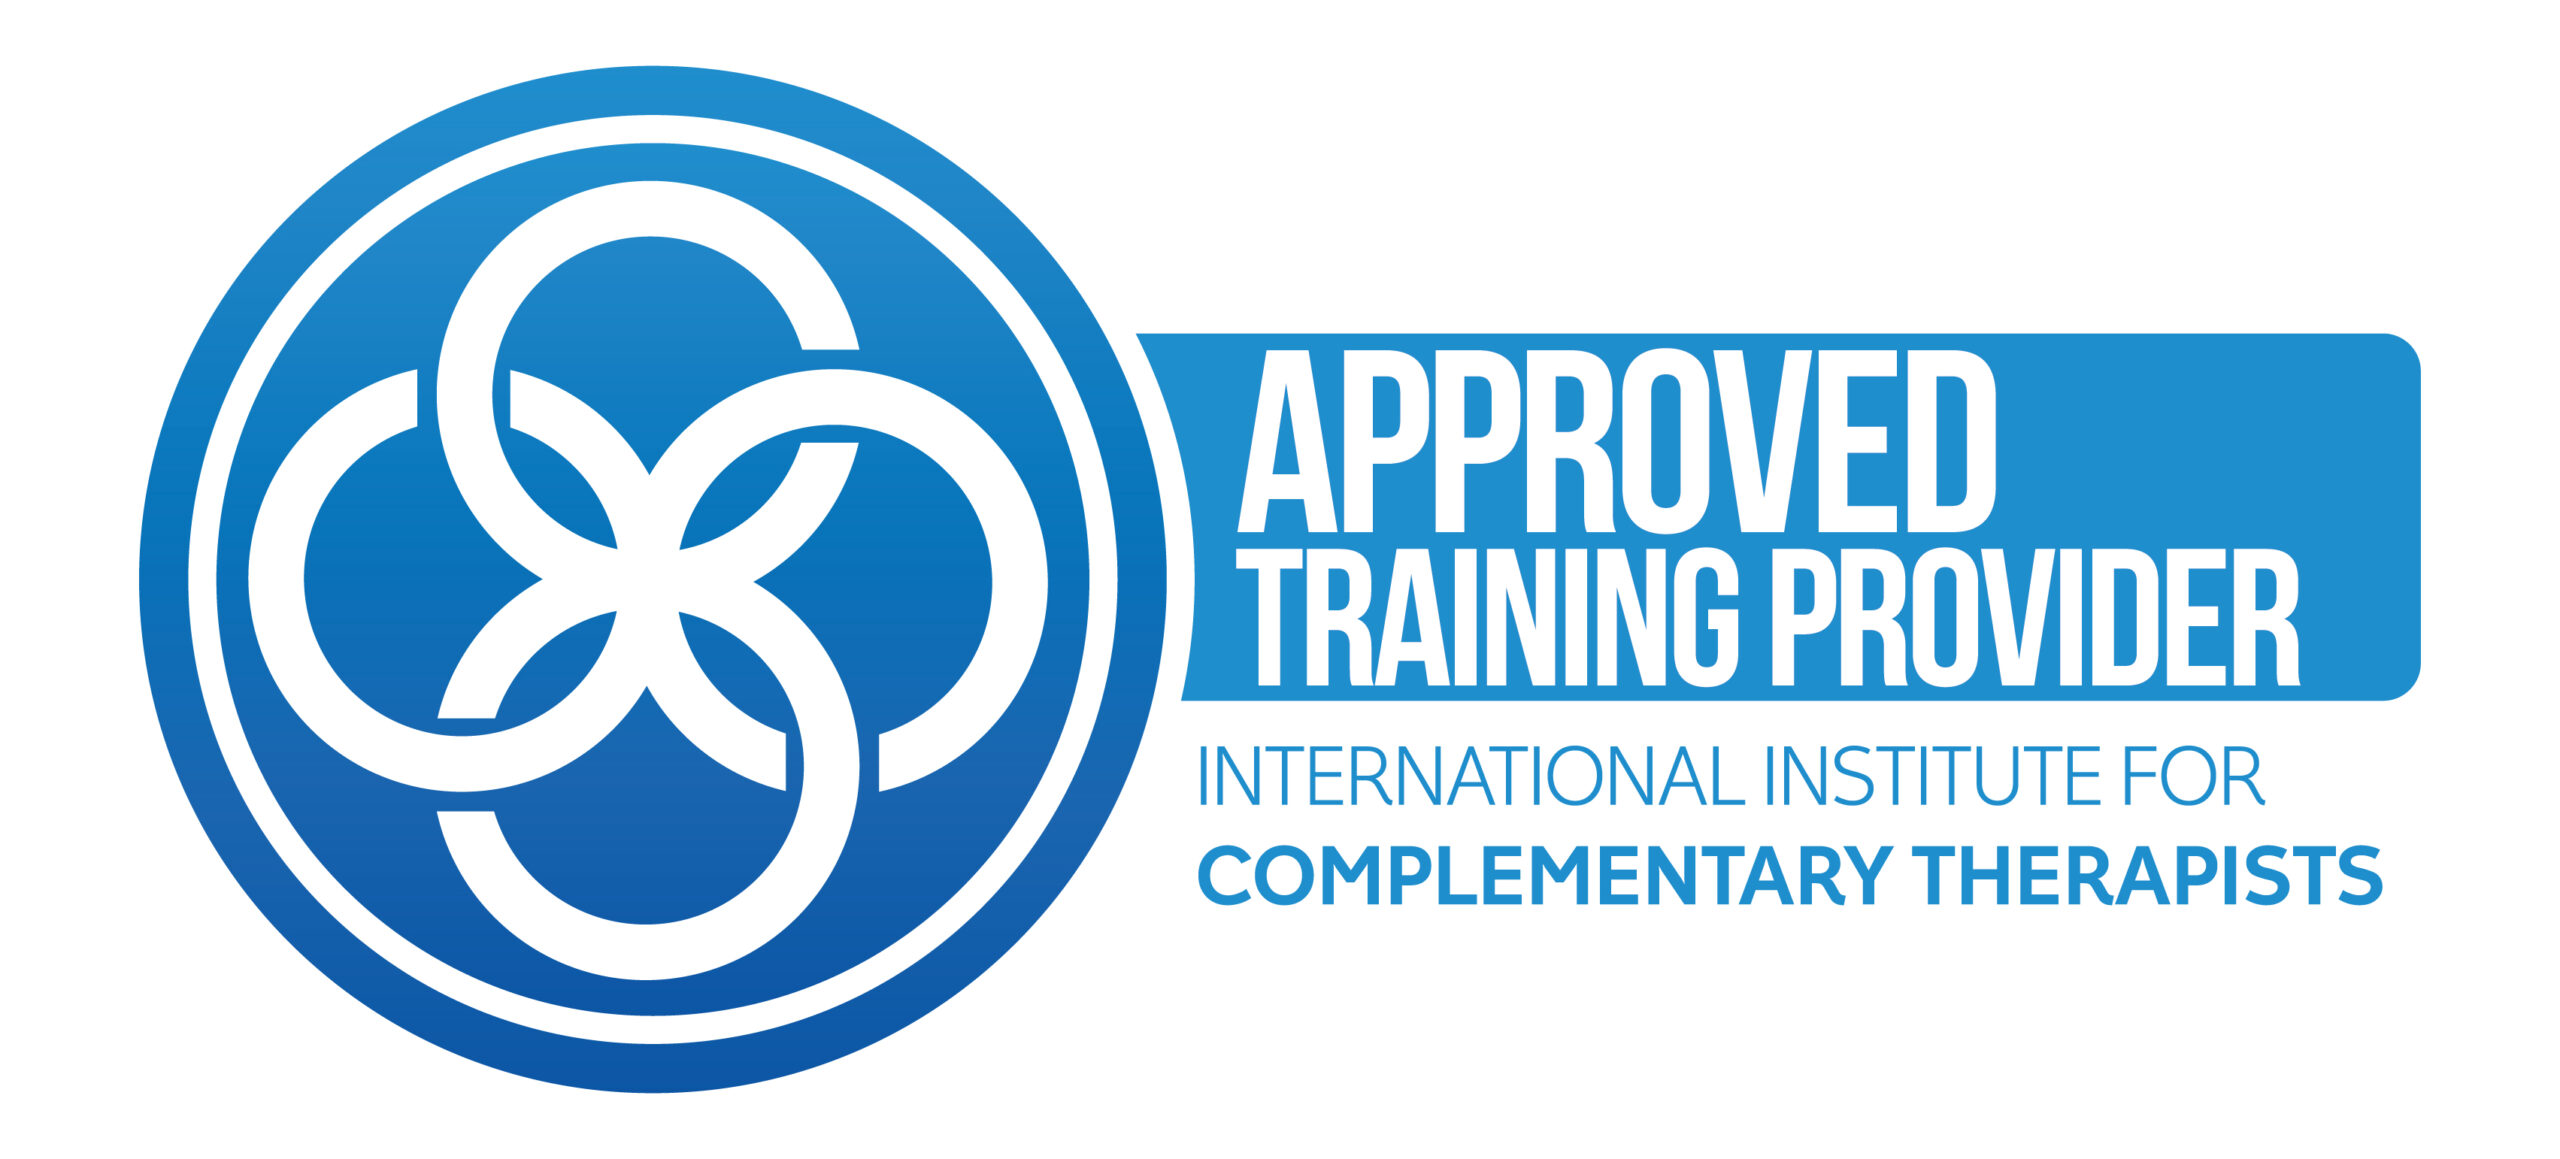 Nous sommes un prestataire de formation agréé par l'International Institute For Complementary Therapists.